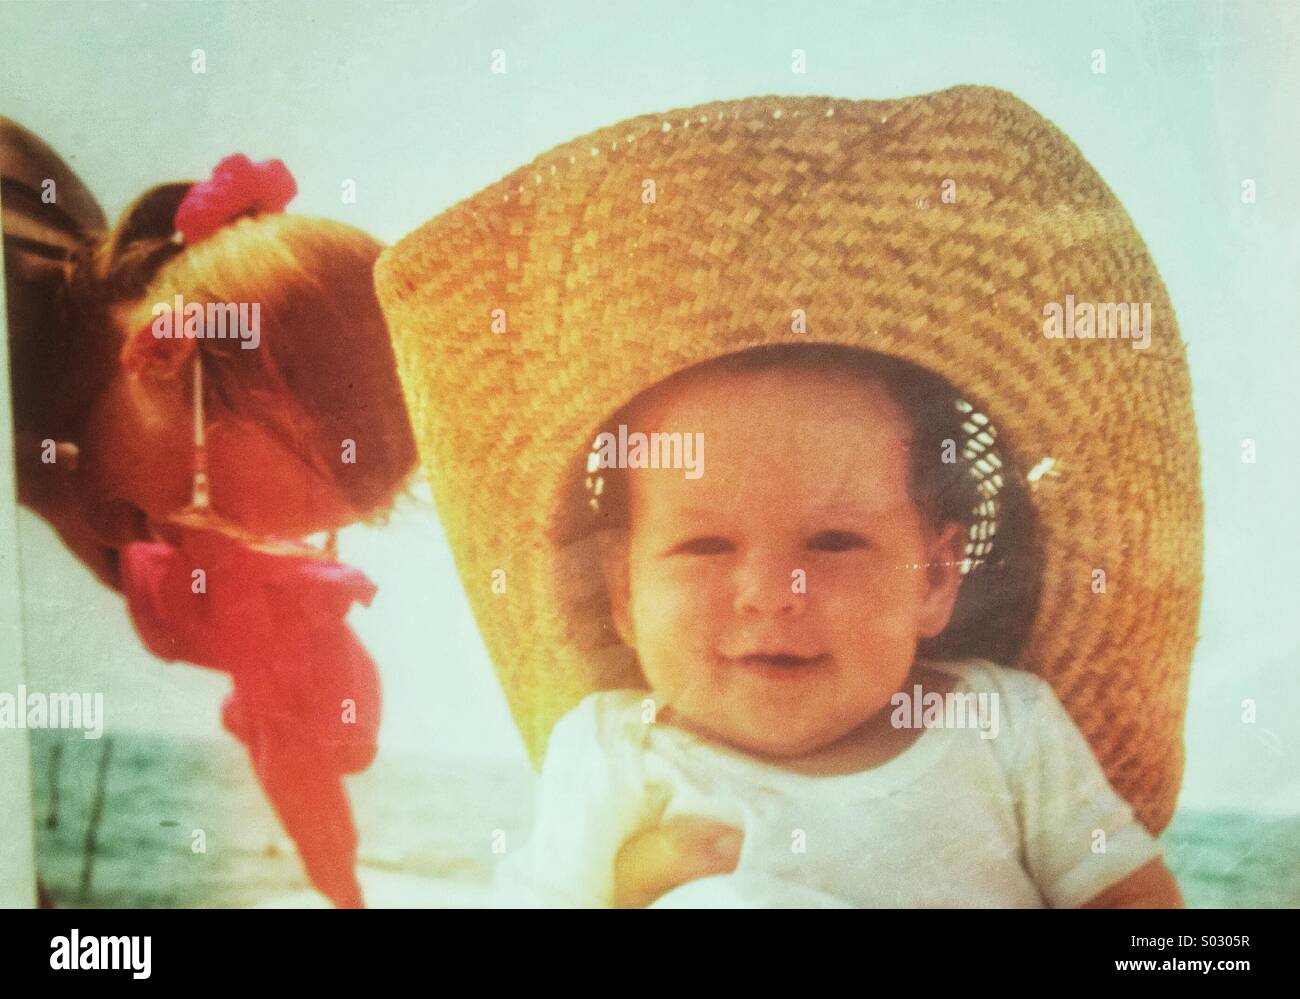 Bébé de 3 à 6 mois avec chapeau de paille sur la plage Banque D'Images